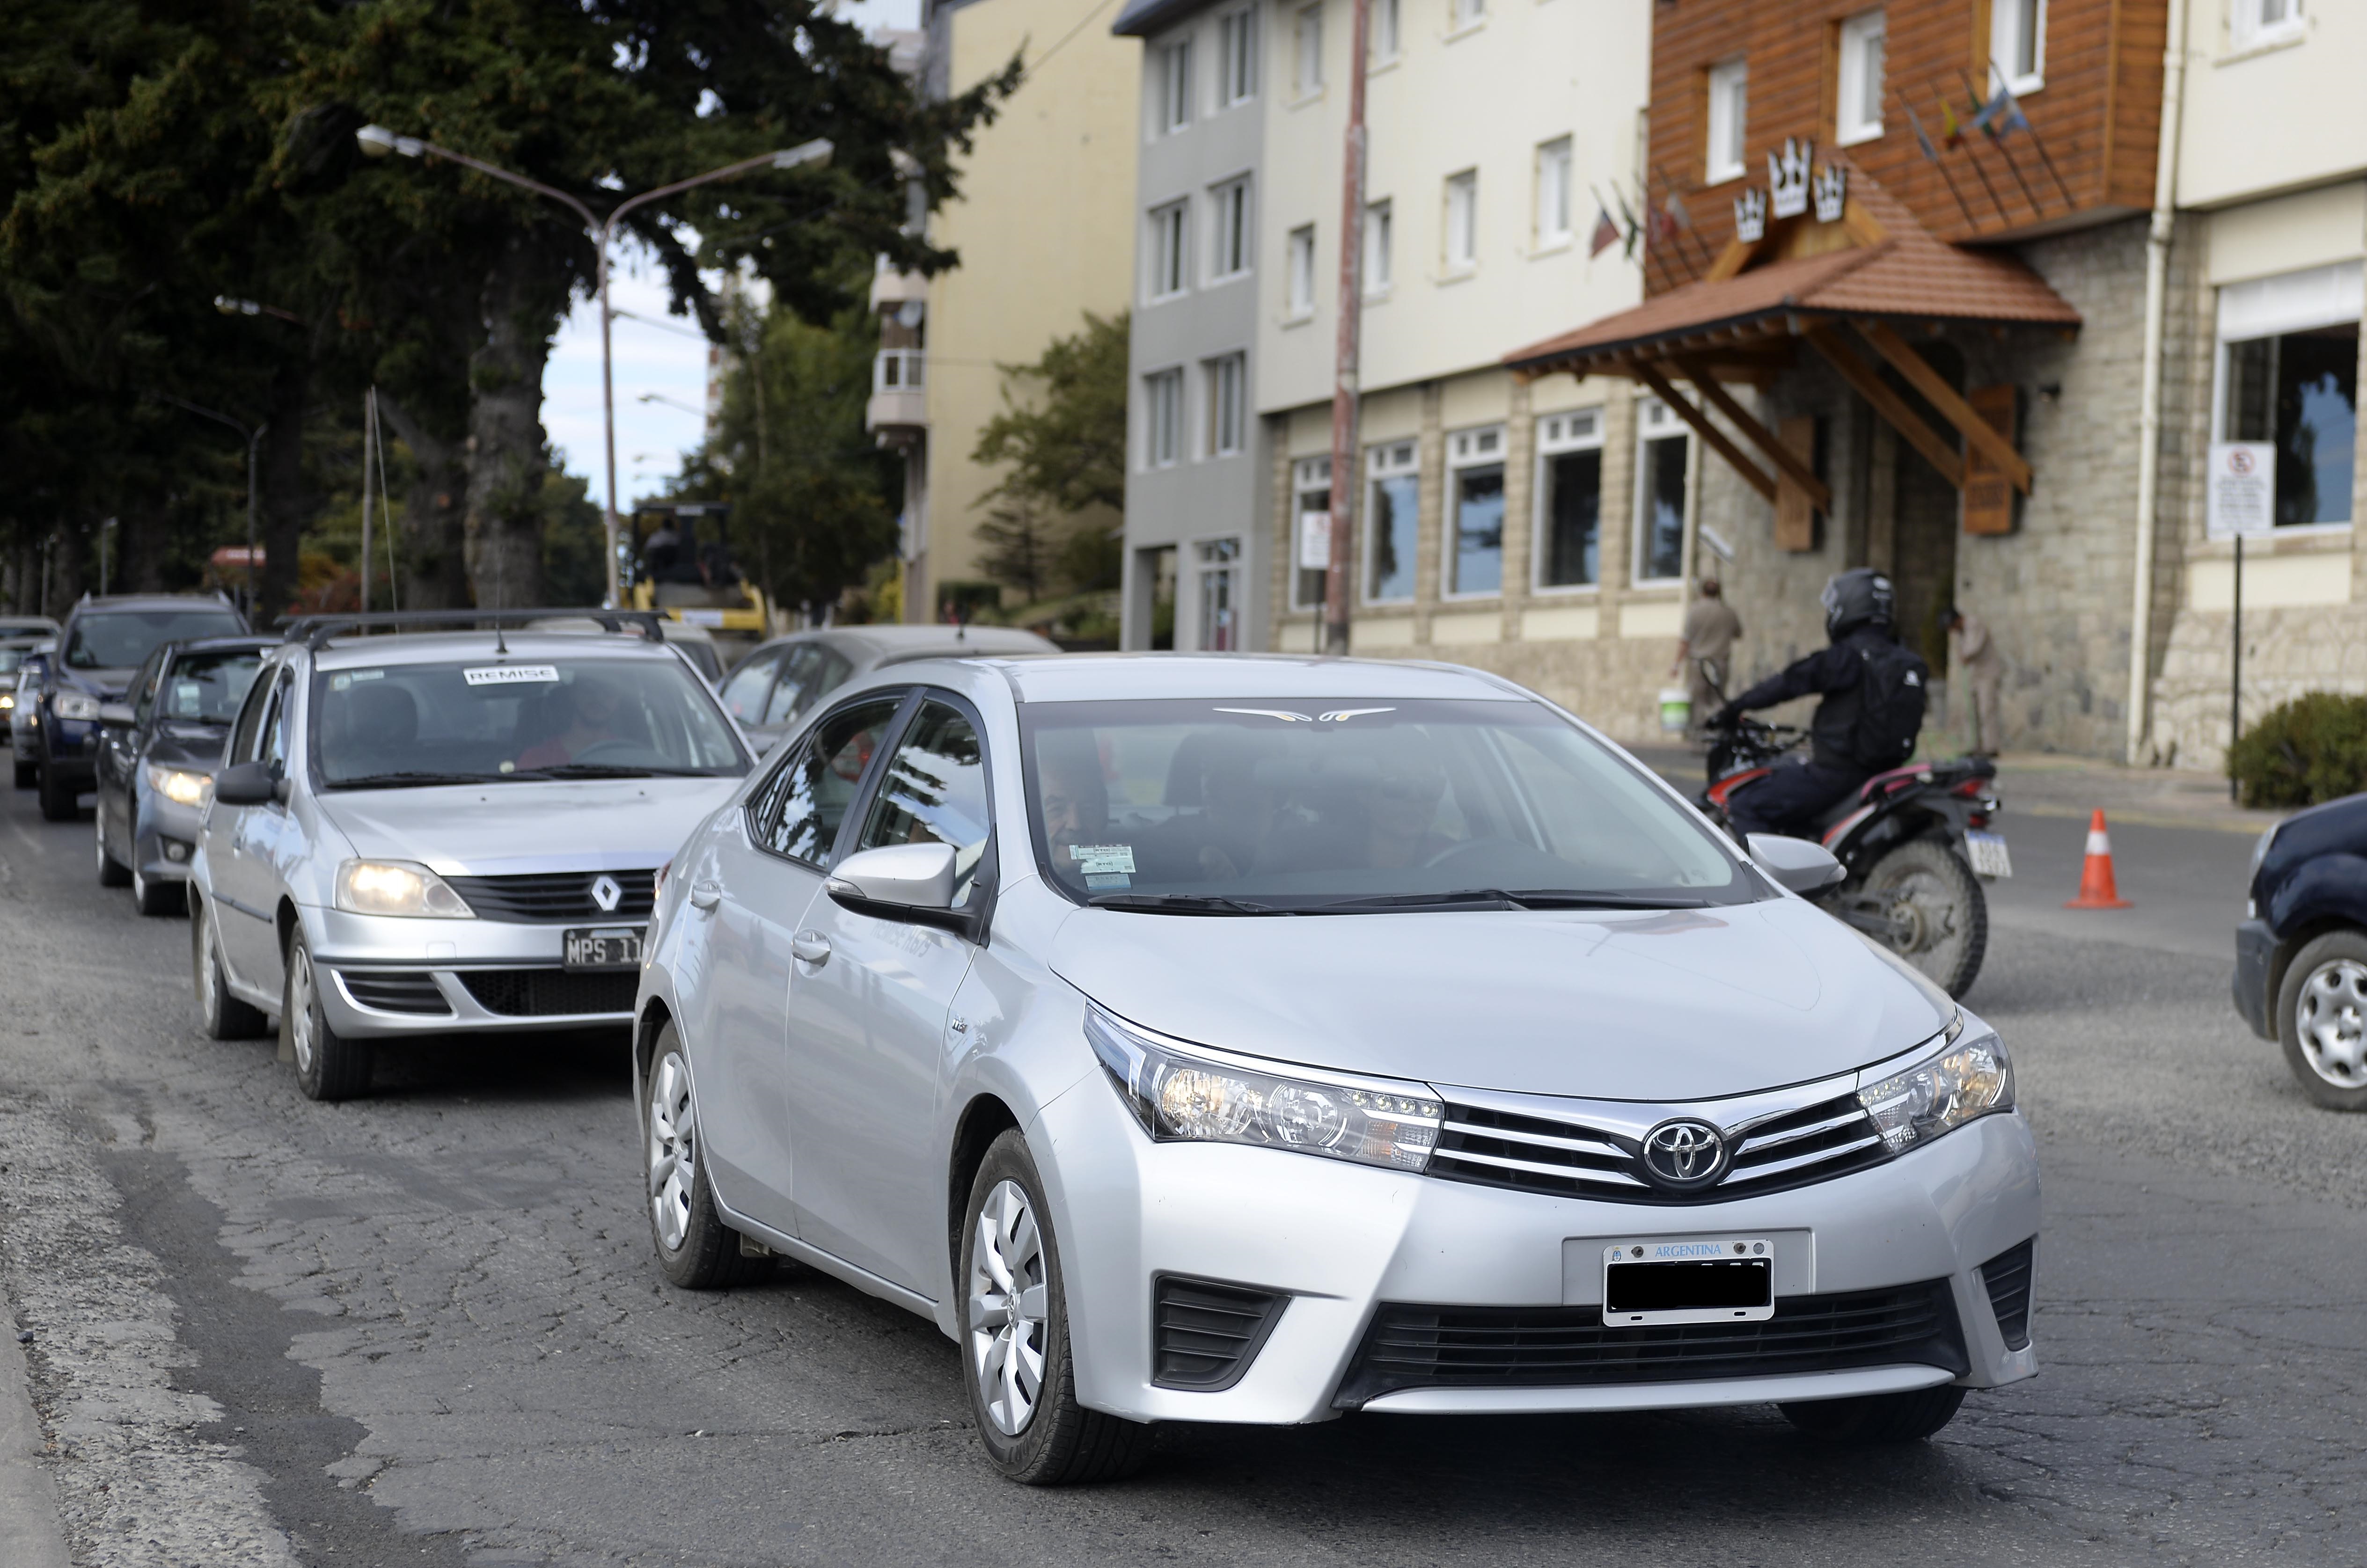 Uno de los modelos de vehículos que el municipio habilitará como “coche turístico” son Toyota Corolla.